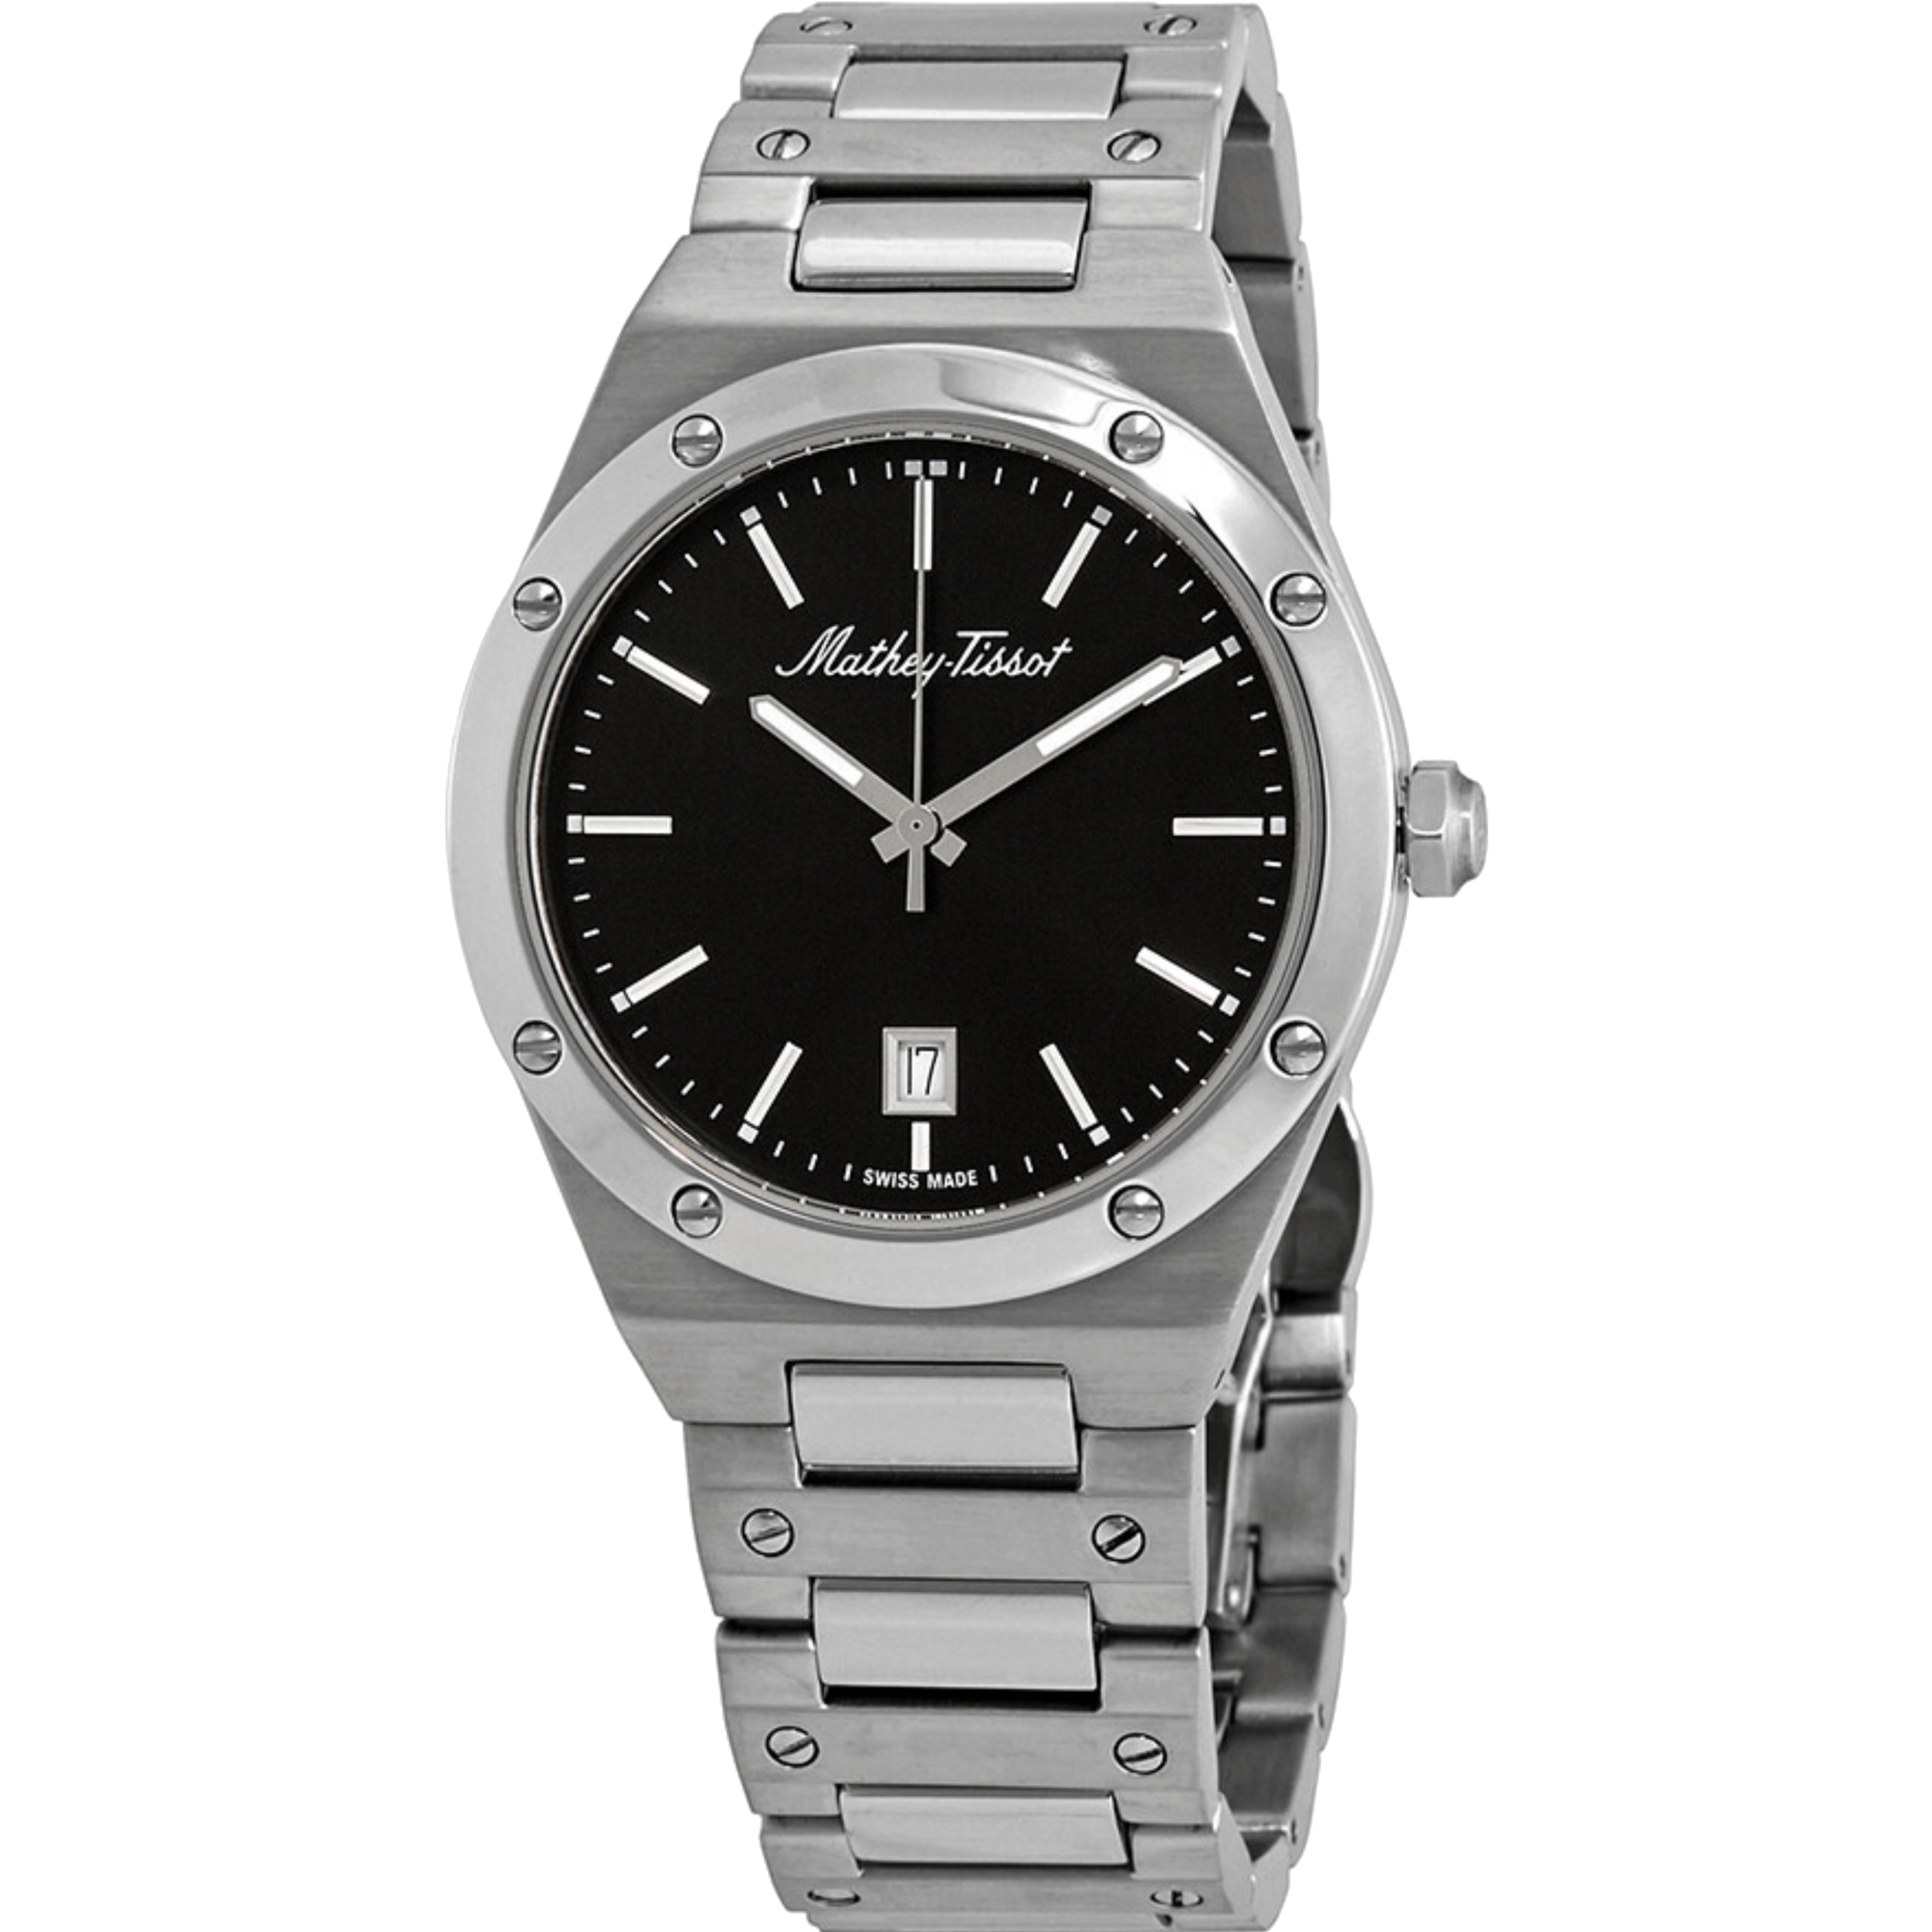 שעון יד לגבר Mathey Tissot H680AN 41mm צבע כסף/שחור/זכוכית ספיר - אחריות לשנה ע"י היבואן